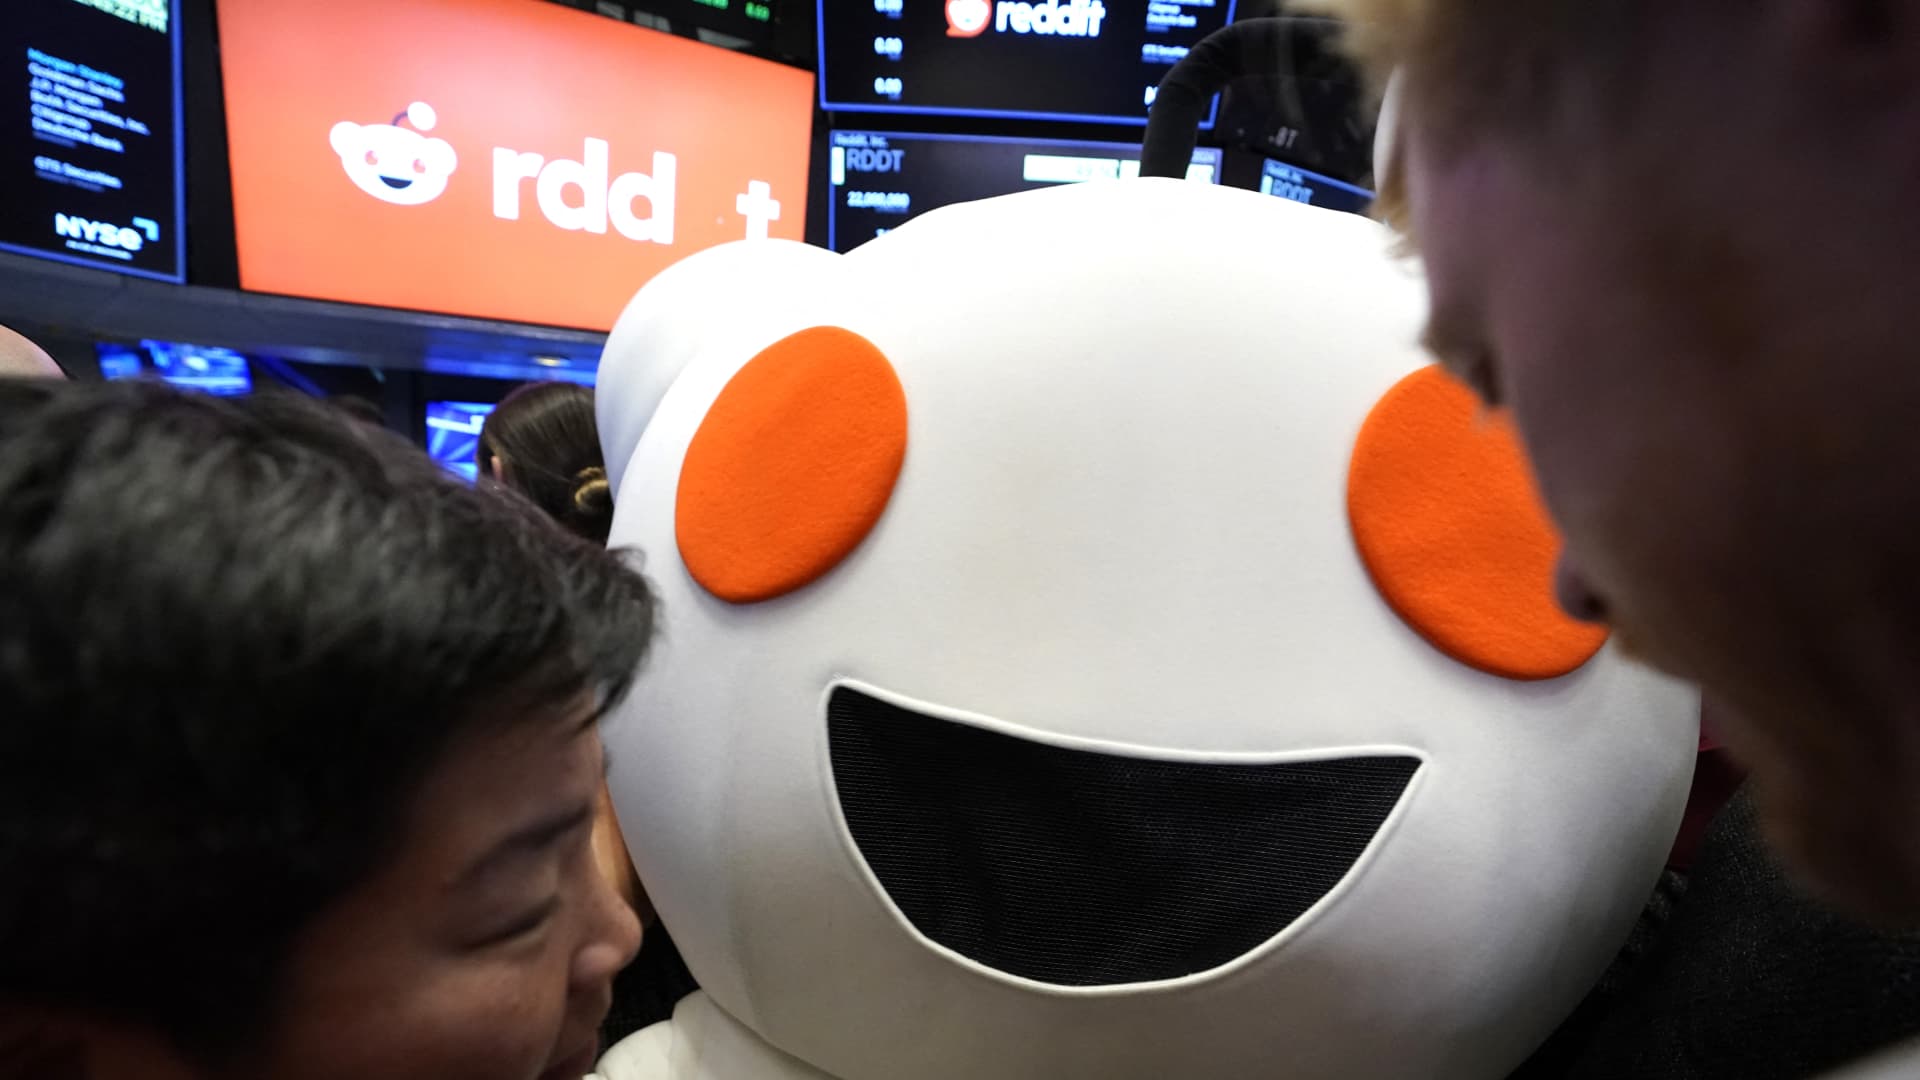 Sam Altman's Reddit stake worth over $600 million after NYSE debut